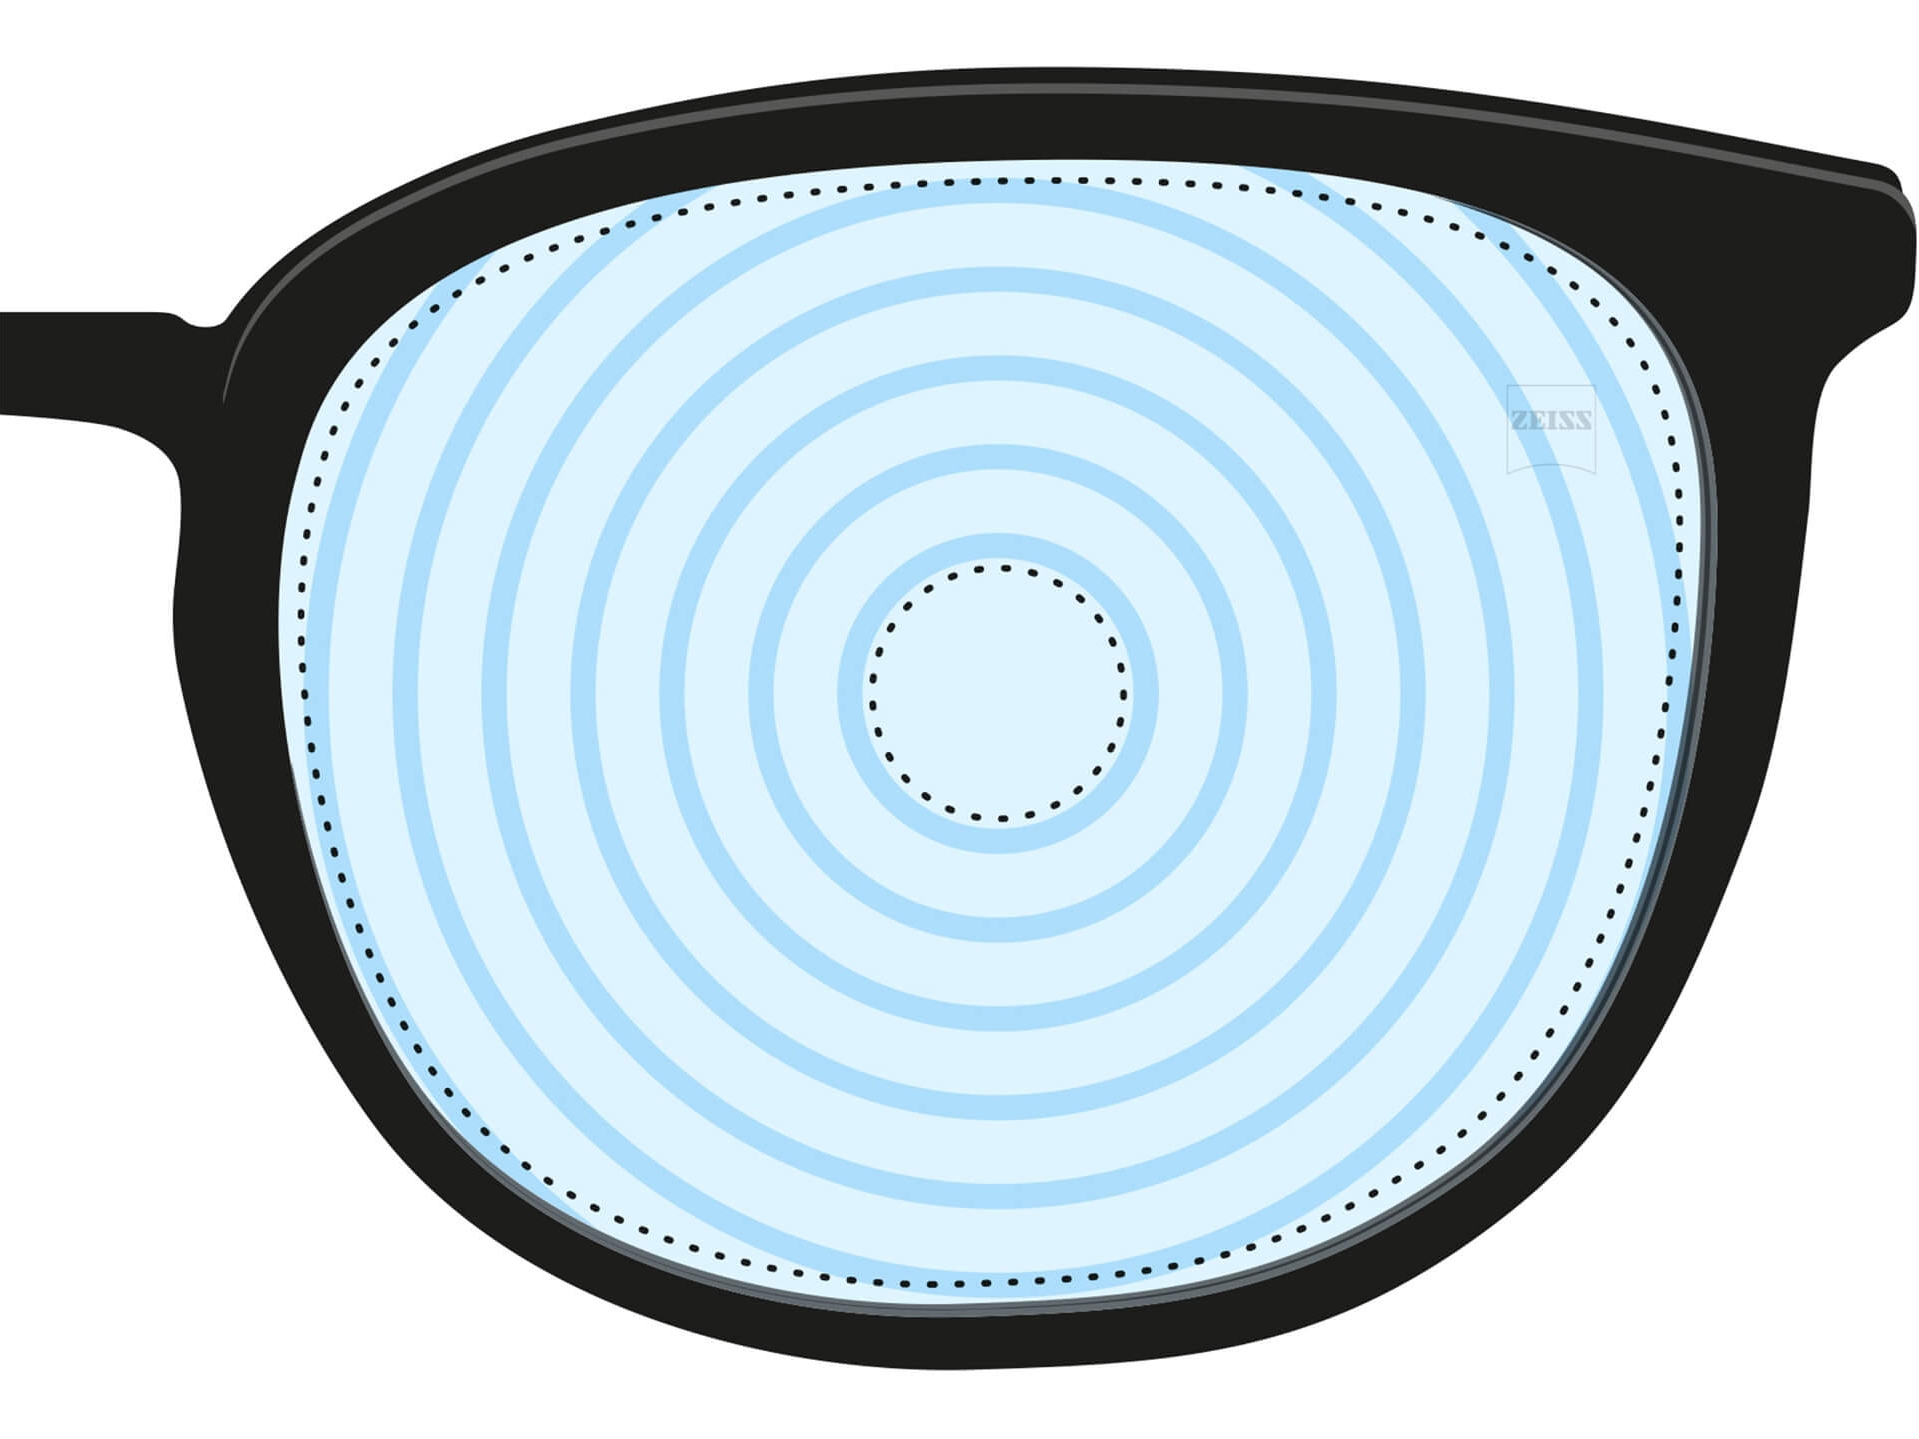 Abbildung eines Brillenglases für das Myopie-Management. Auf dem Brillenglas sieht man konzentrische Kreise, die verschiedene Sehstärken darstellen. Dies ist ein Beispiel für ein Brillenglas, das für einen speziellen Zweck konzipiert wurde.